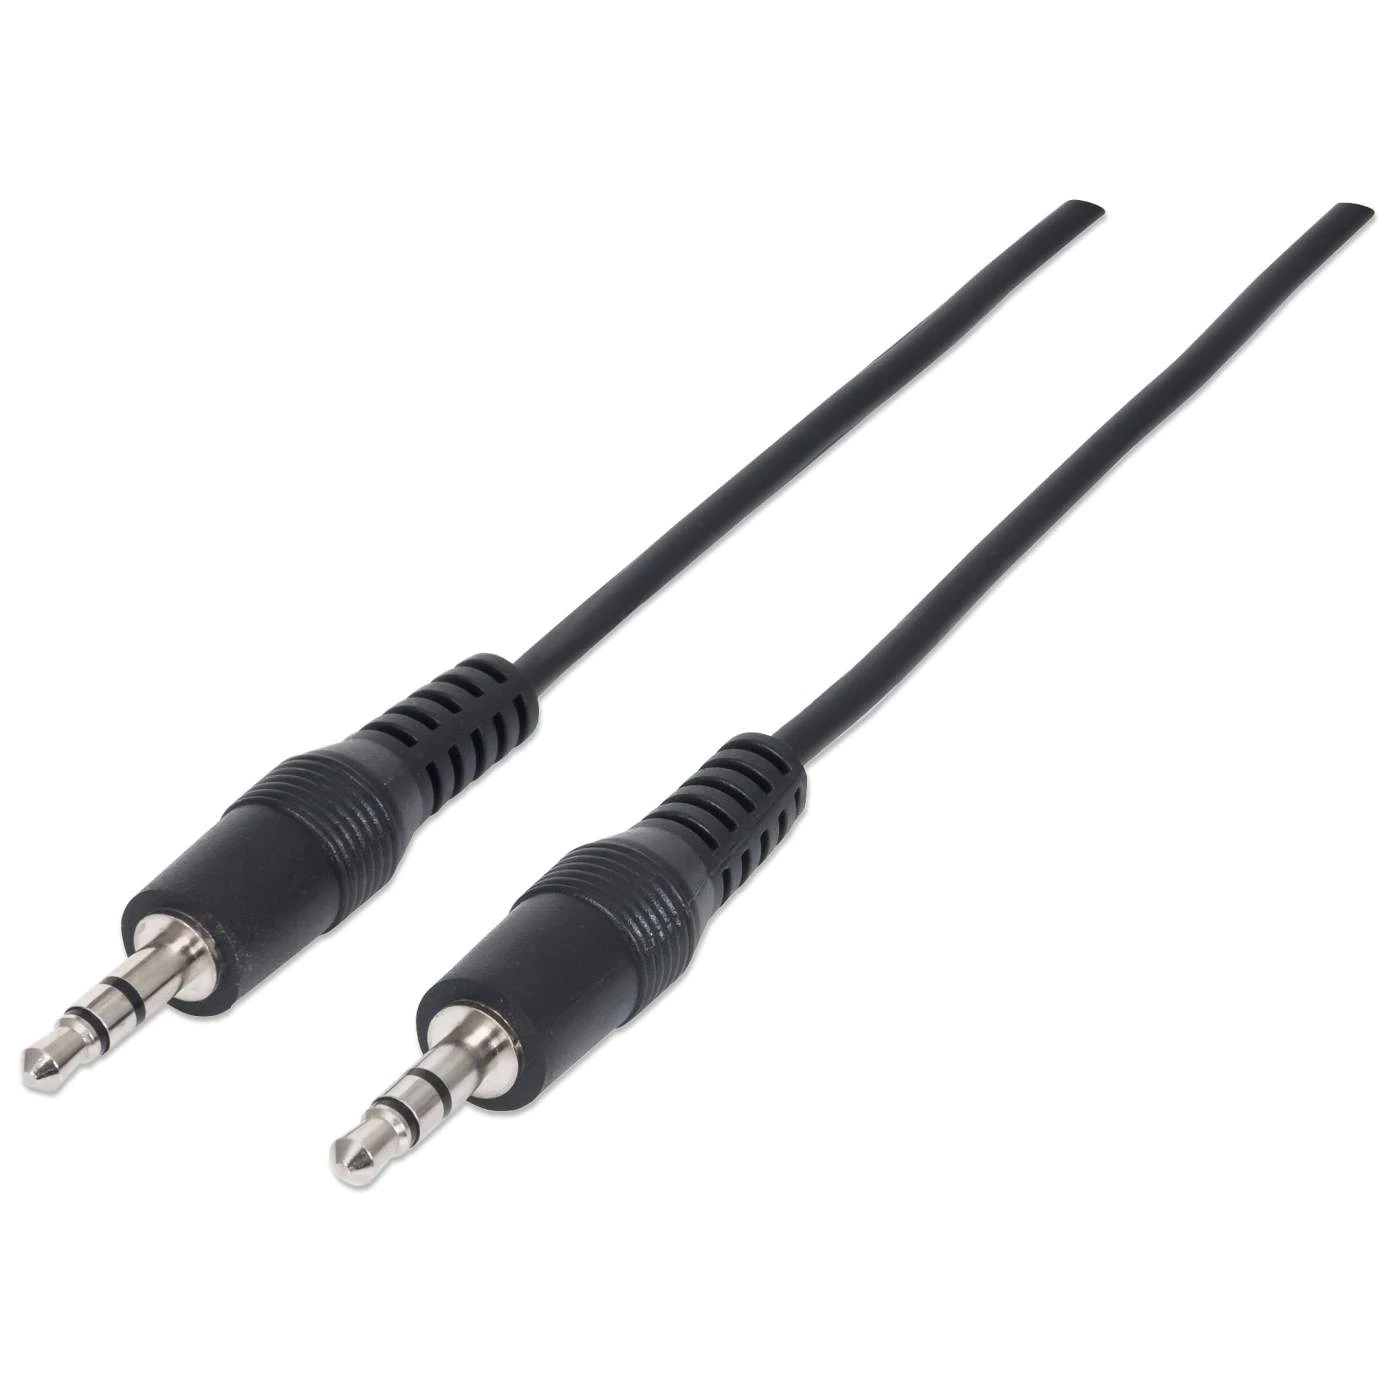 334594 Cable auxiliar 3.5mm Macho a Macho Color Negro de 1.8m -